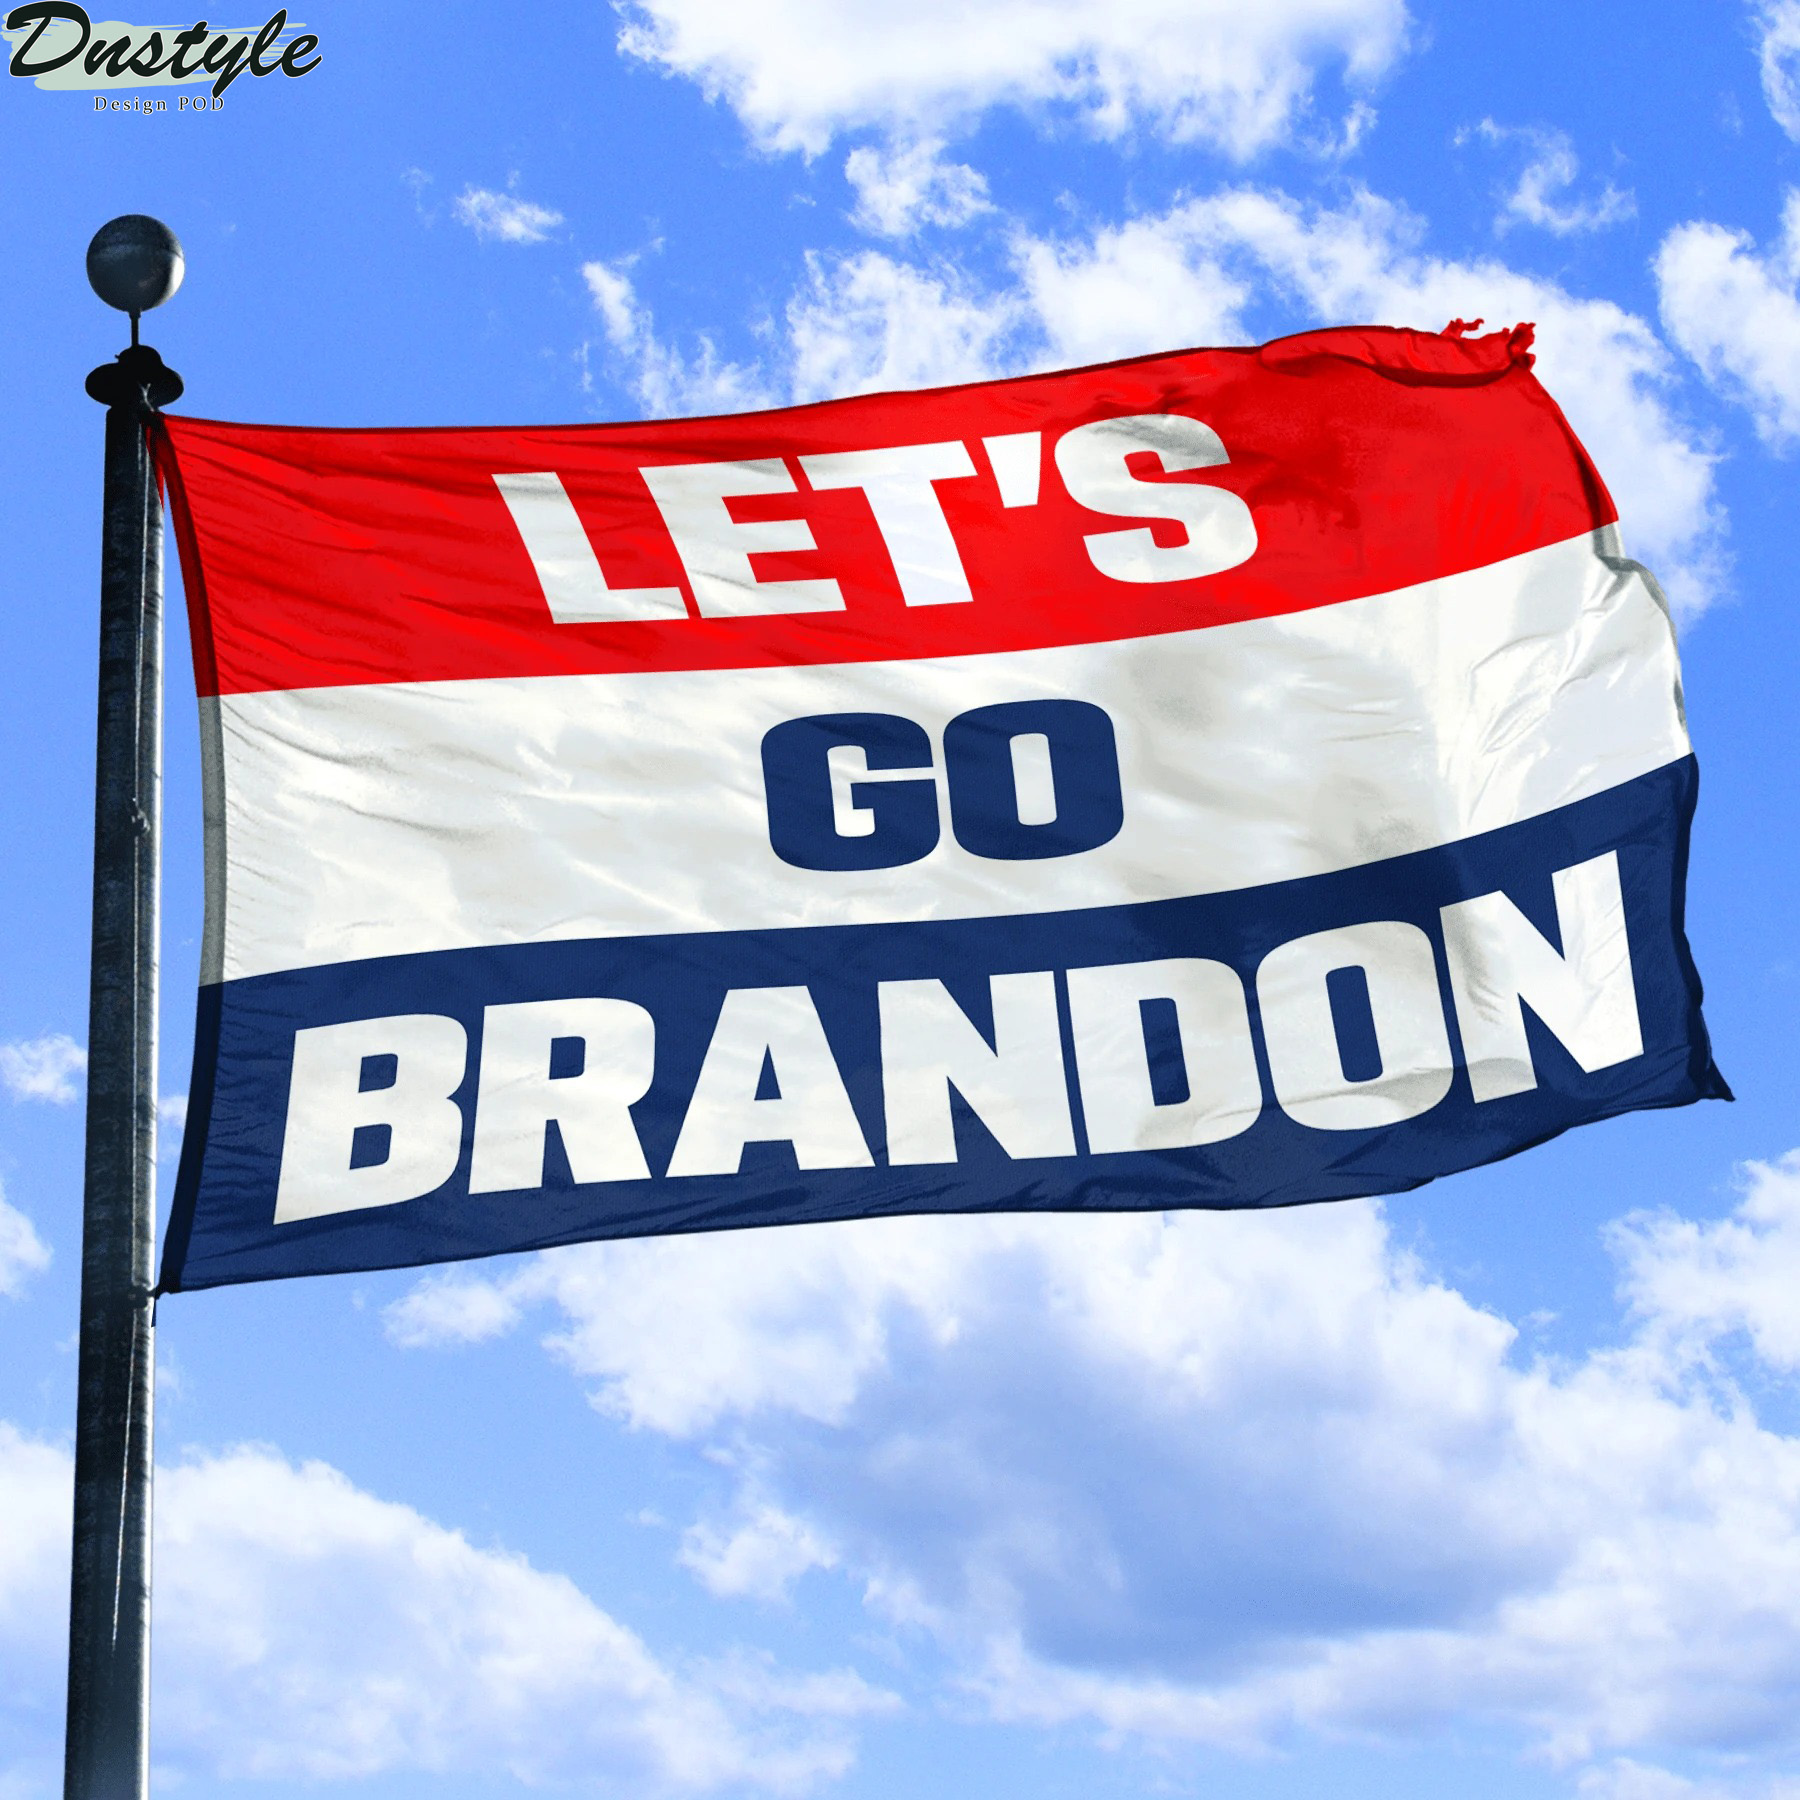 Let's go brandon flag